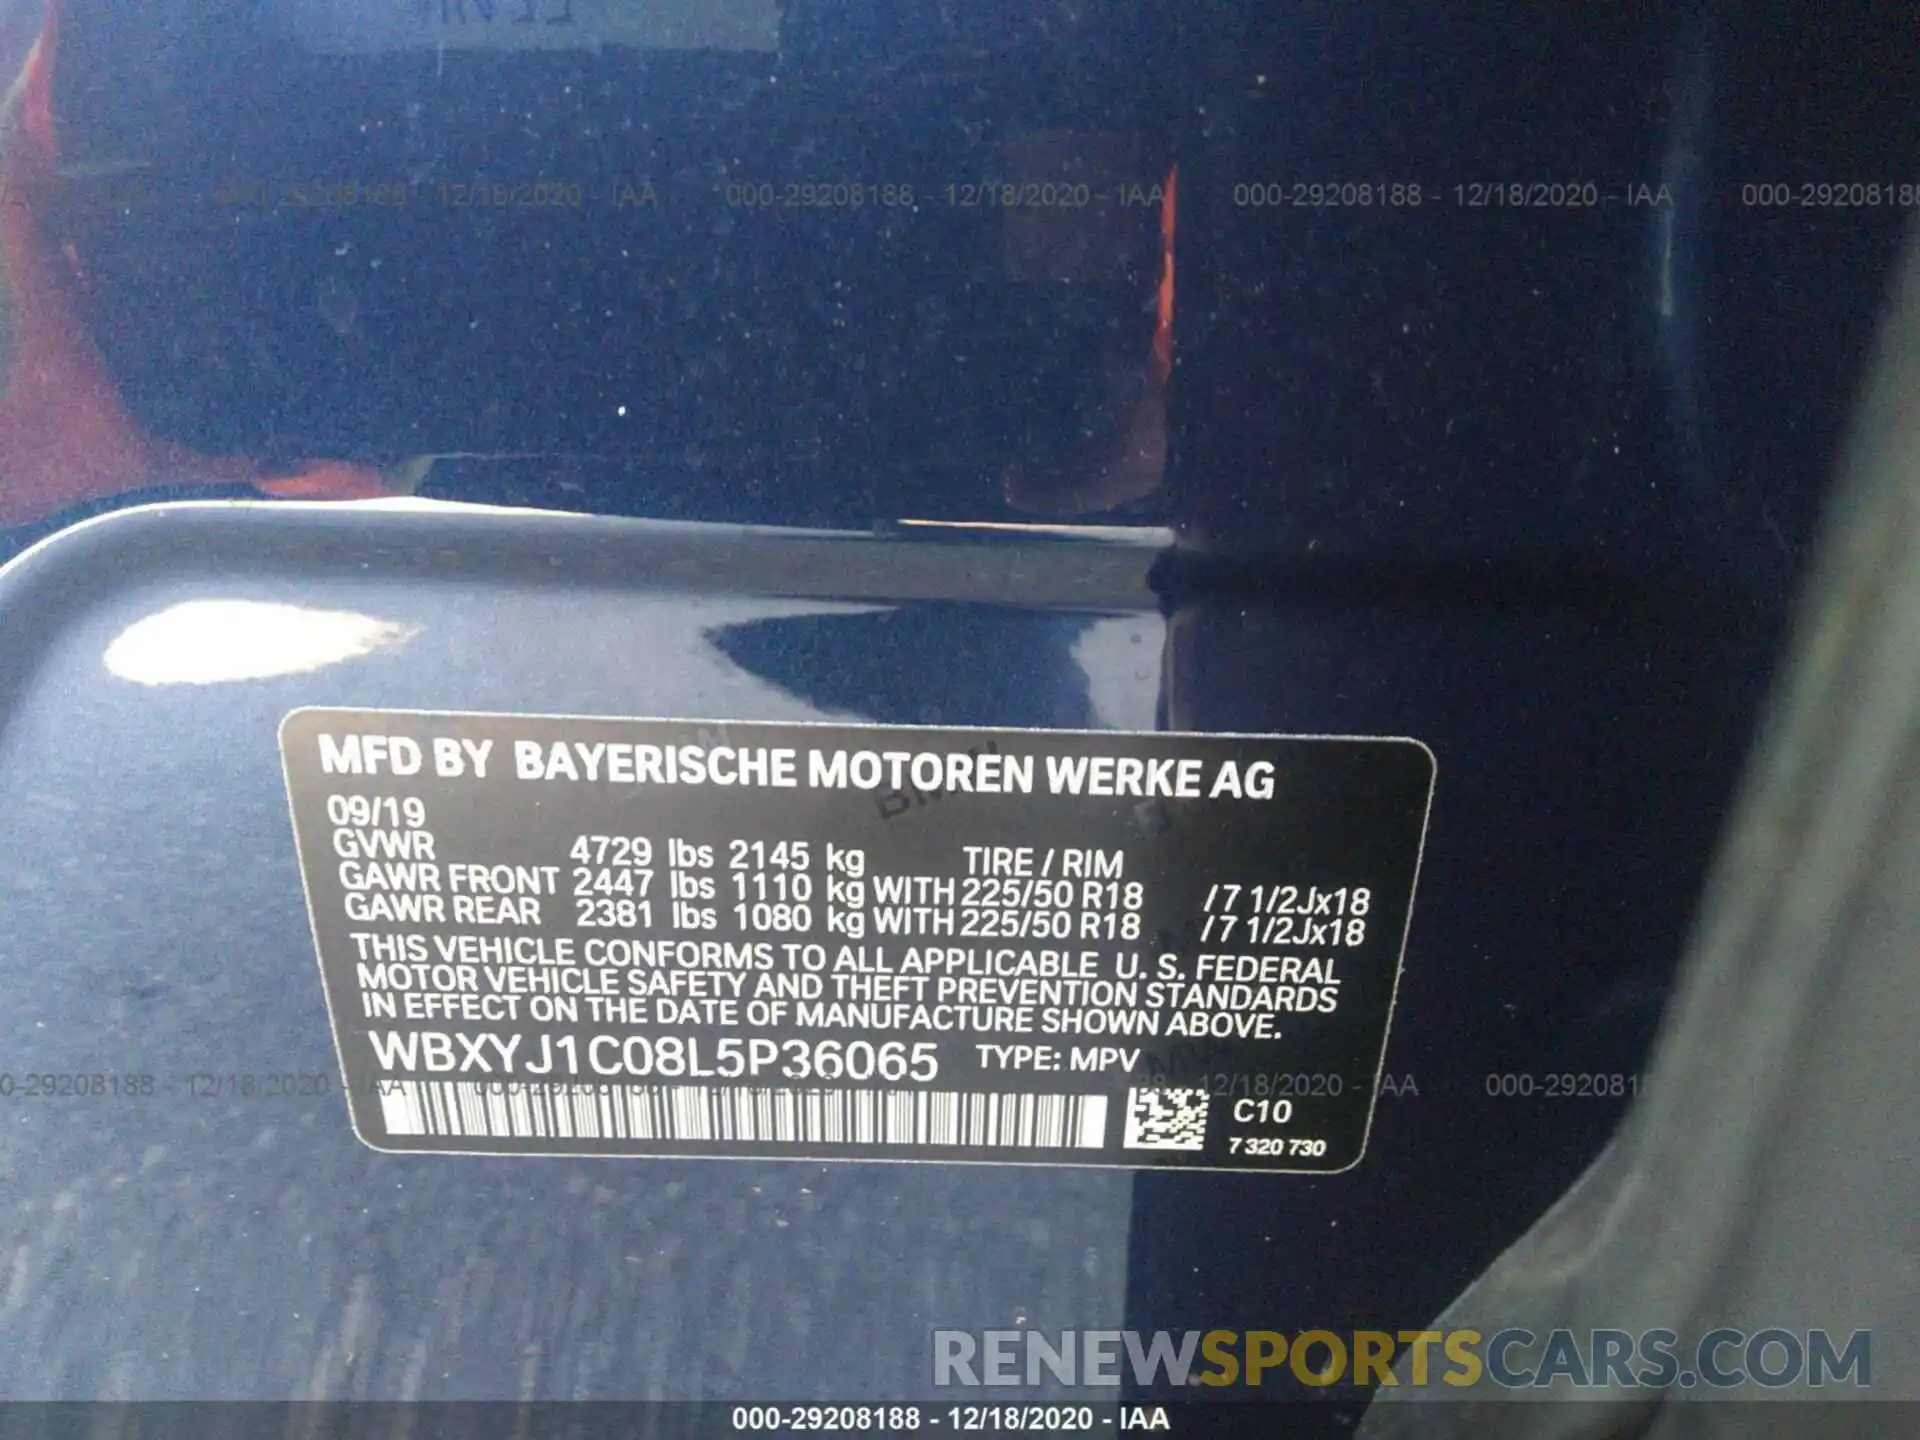 9 Photograph of a damaged car WBXYJ1C08L5P36065 BMW X2 2020